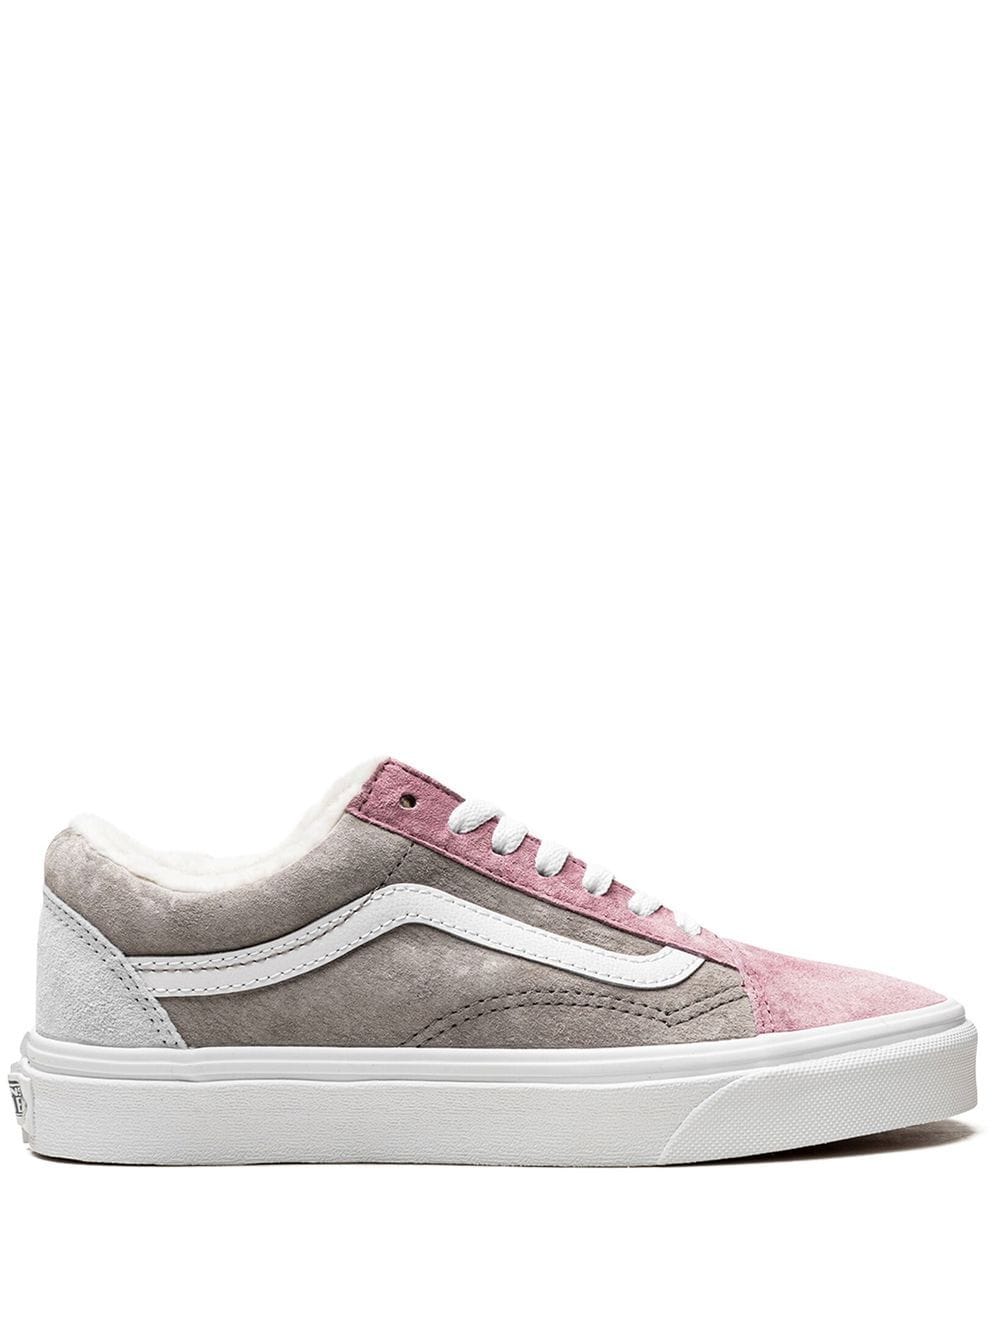 Vans Pig Suede Old Skool Sherpa Sneakers In Pink